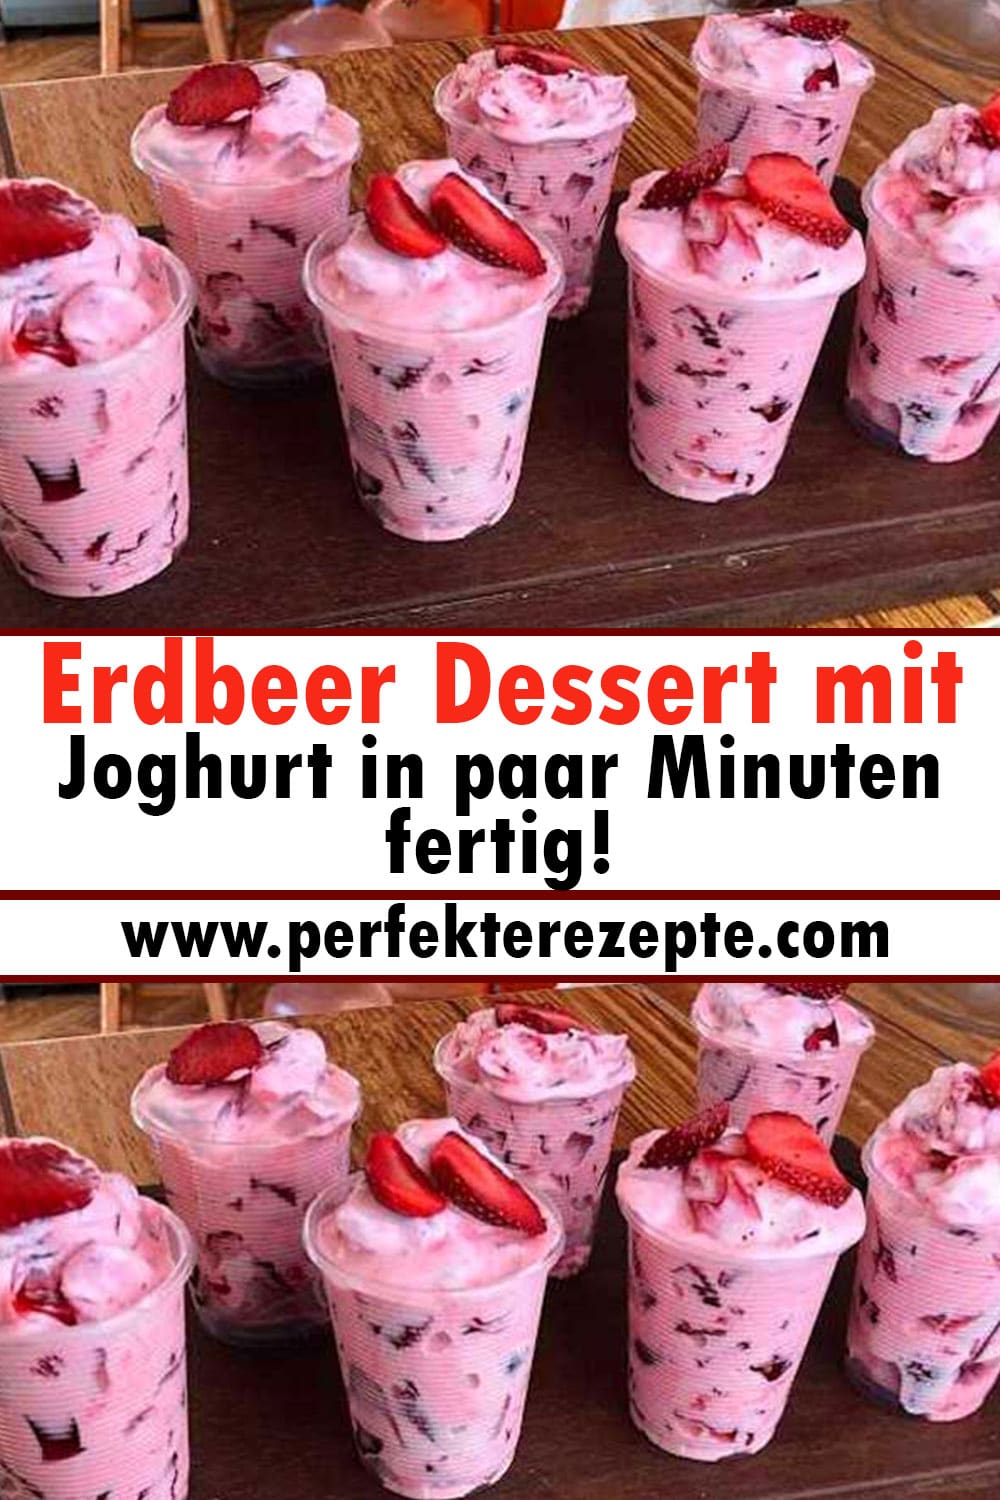 Erdbeer Dessert mit Joghurt Rezept in paar Minuten fertig!